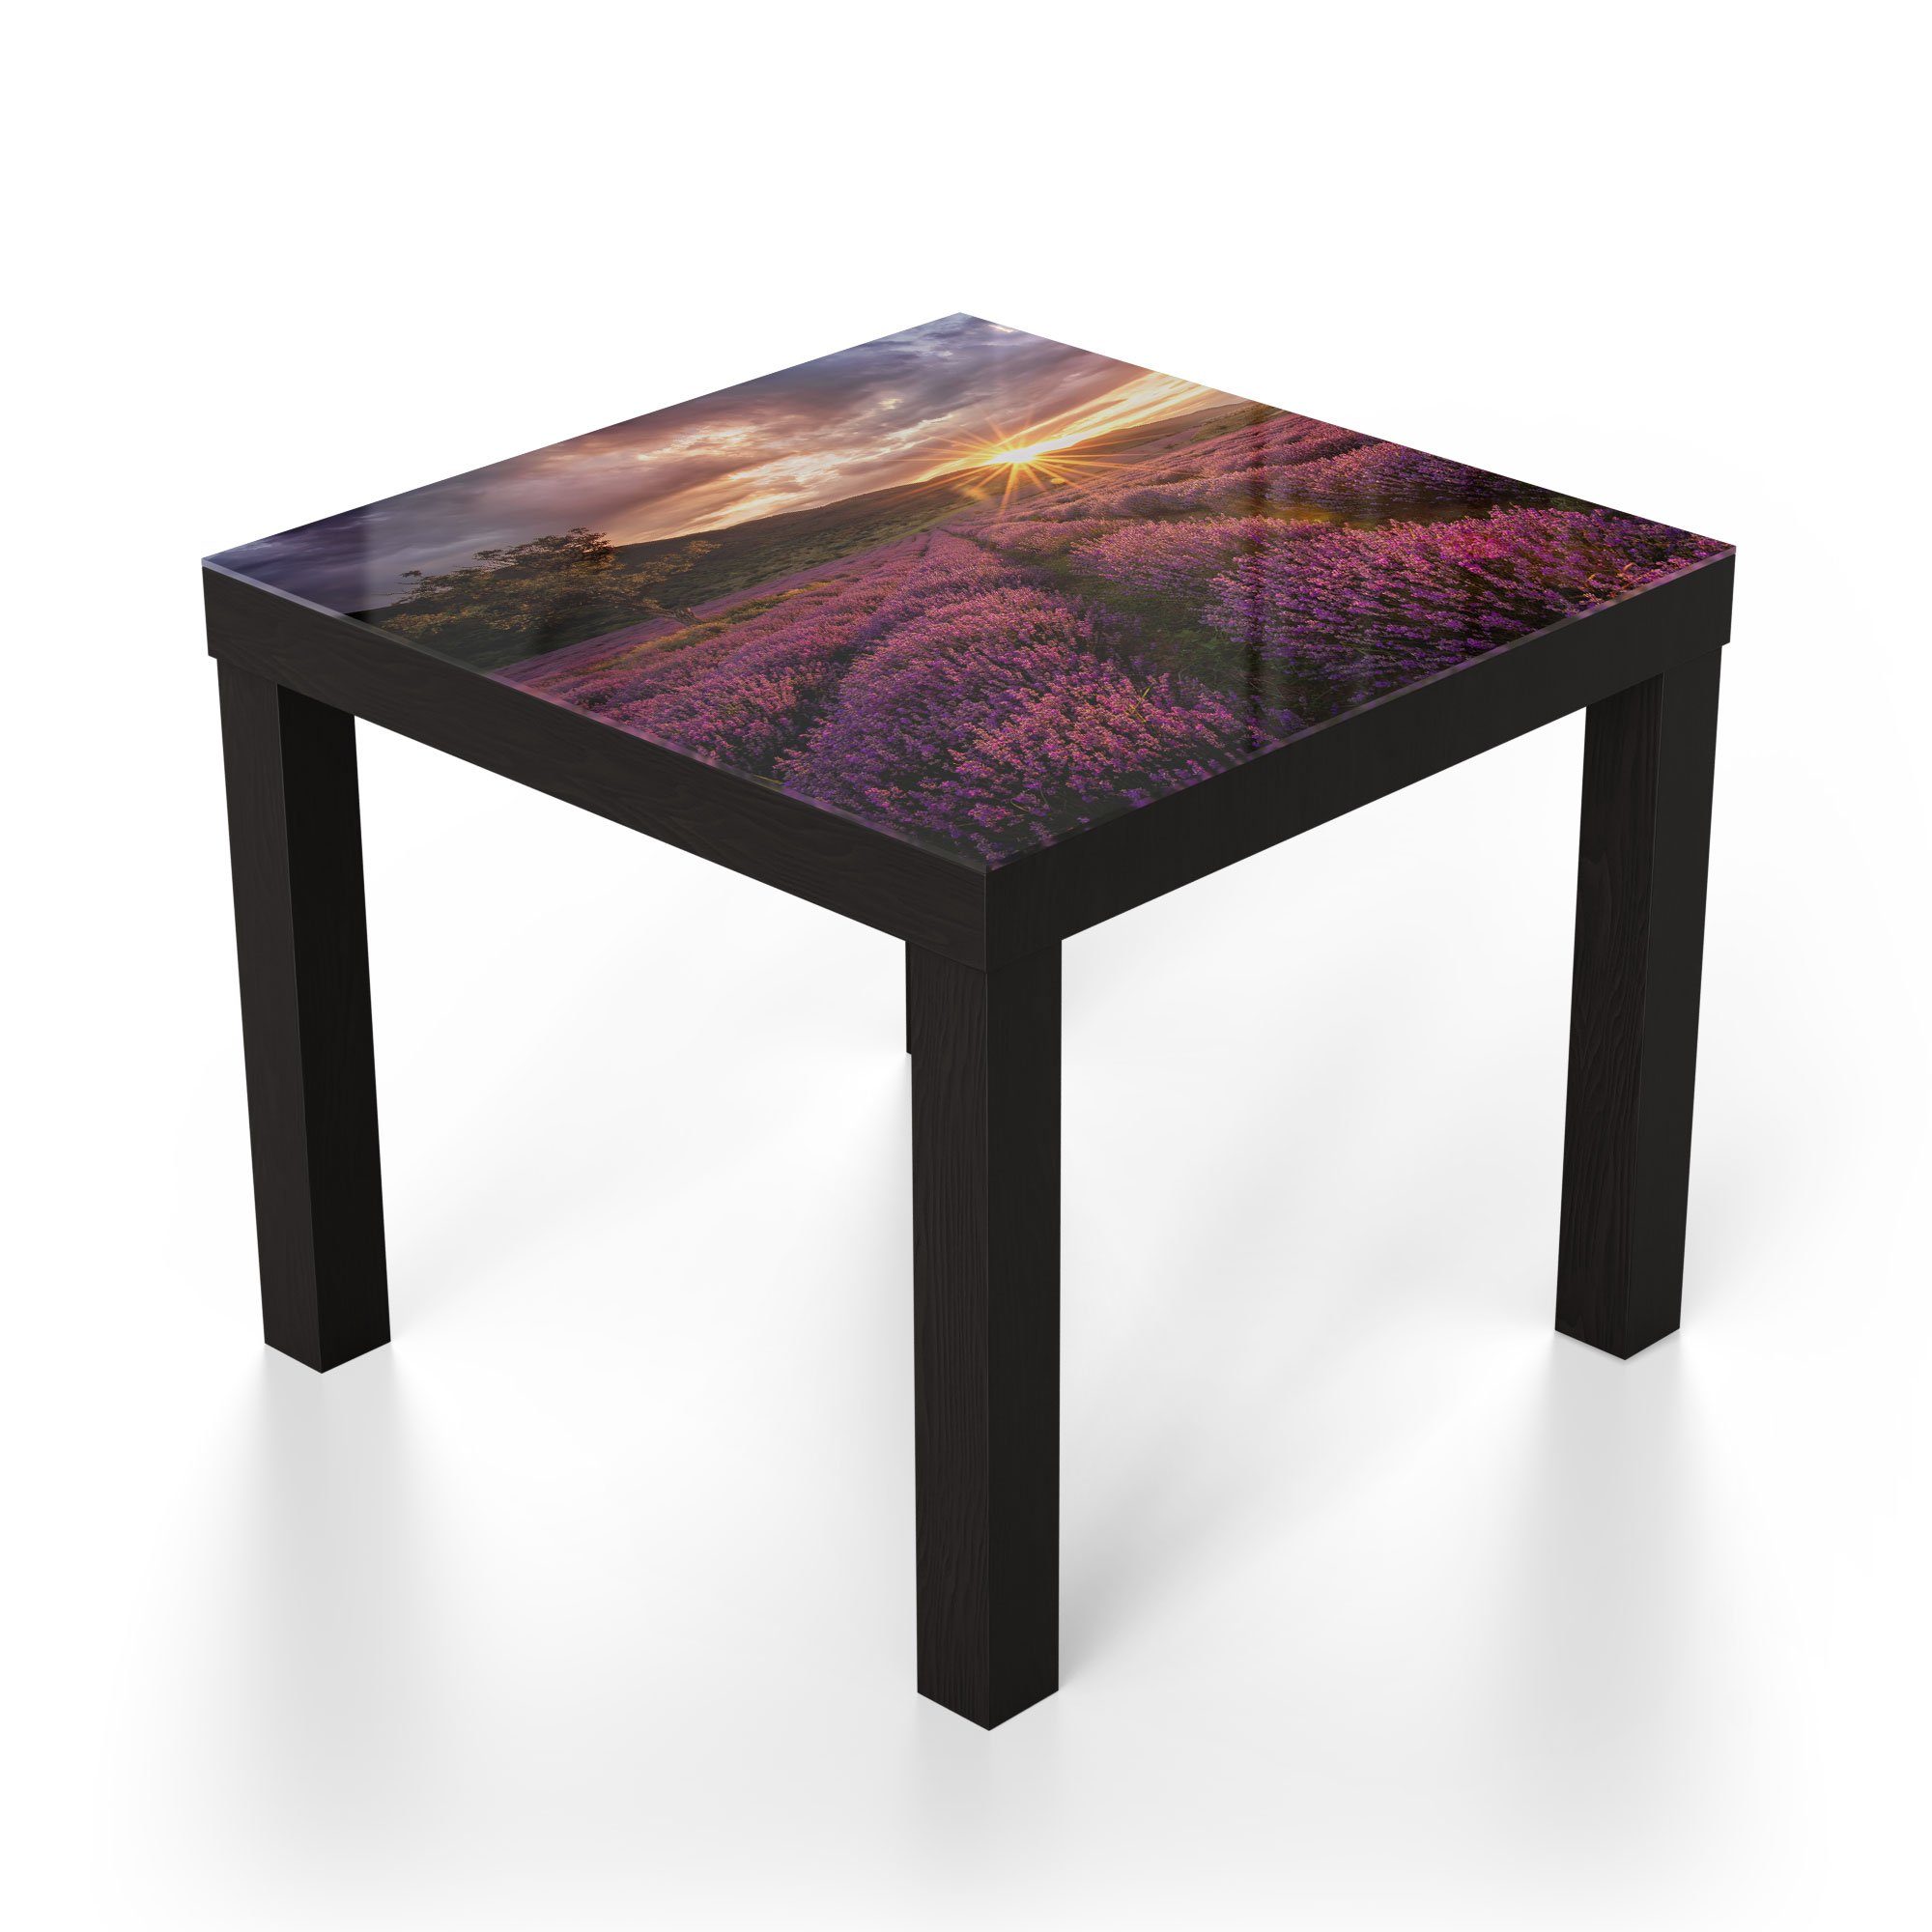 Schwarz Beistelltisch modern Abend', am Couchtisch DEQORI Glastisch 'Lavendelreihen Glas